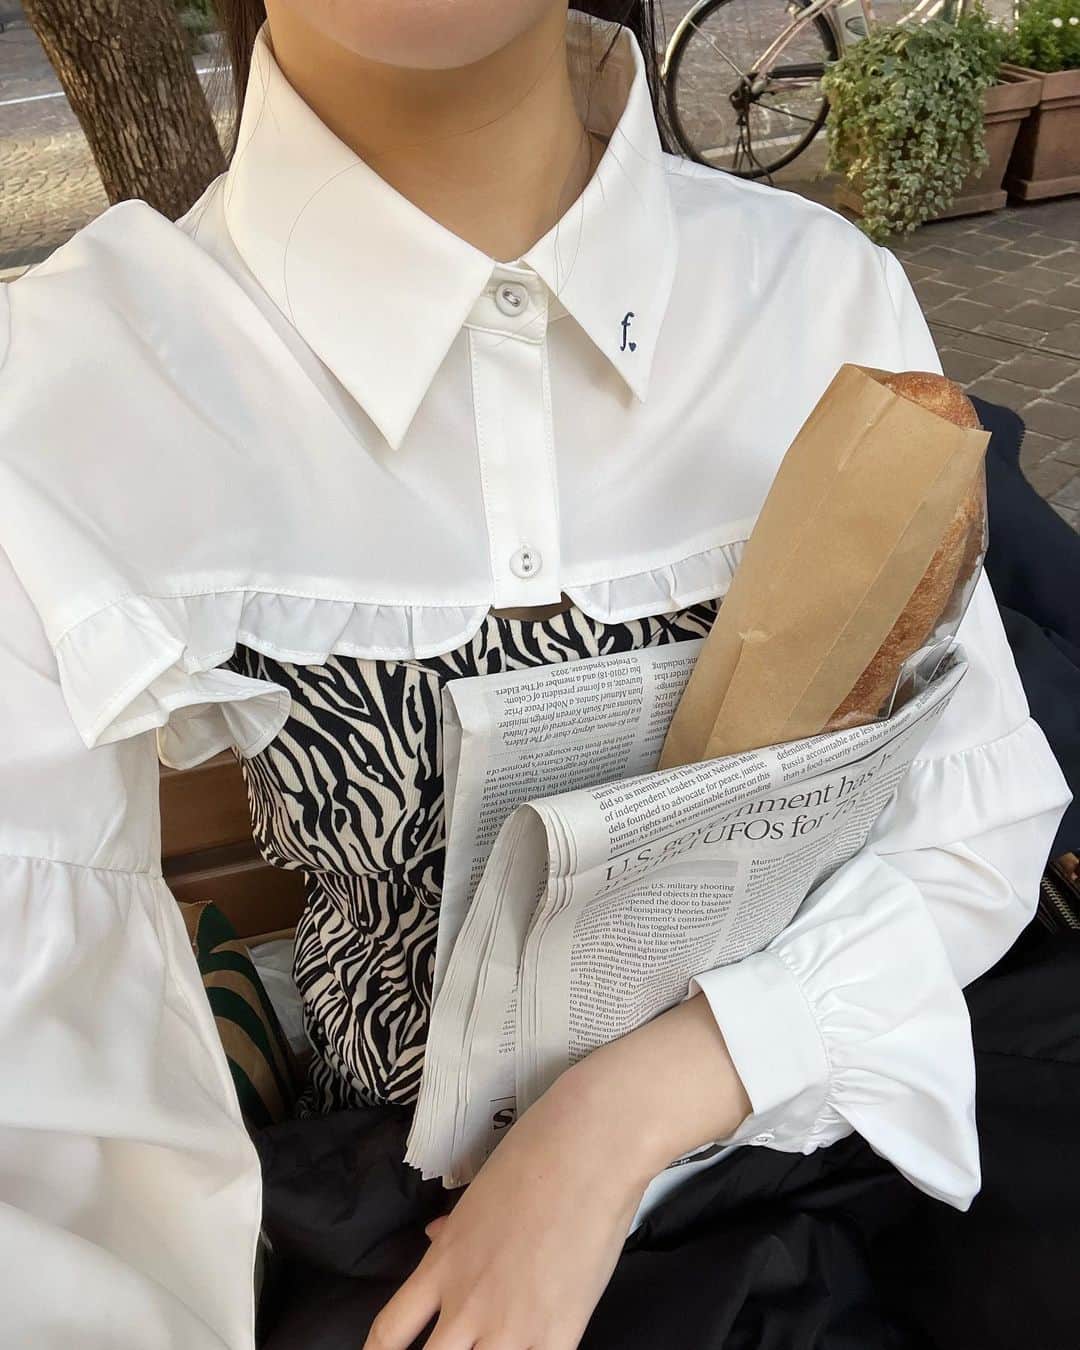 fruncoのインスタグラム：「ㅤㅤㅤㅤㅤㅤㅤㅤㅤㅤㅤㅤㅤ 【HOT ITEM】 クロップドロゴ刺繡フリルブラウス ￥2,999 / WHITEのみ ㅤㅤㅤㅤㅤㅤㅤㅤㅤㅤㅤㅤㅤ トレンド感抜群のショート丈のブラウス♡ ㅤㅤㅤㅤㅤㅤㅤㅤㅤㅤㅤㅤㅤ キャミワンピ、Tシャツ、キャミソール、タートルネックニットなど、 様々なアイテムと相性が良く、季節問わず着ていただけます💖 ㅤㅤㅤㅤㅤㅤㅤㅤㅤㅤㅤㅤㅤ 裾のフリルとネイビー色の刺繍がポイントです🪄✨️ ㅤㅤㅤㅤㅤㅤㅤㅤㅤㅤㅤㅤㅤ - - - - - - - - - - - - - - - - -   アイテムの詳細は商品タグ、または @frunco.official トップのURLよりご覧いただけます！✨️ ㅤㅤㅤㅤㅤㅤㅤㅤㅤㅤㅤㅤㅤ official store 税込¥3,000以上お買い上げで送料が¥220に🌱 さらに！税込¥8,000以上お買い上げで送料無料 📦 ̖́-  - - - - - - - - - - - - - - - - -」